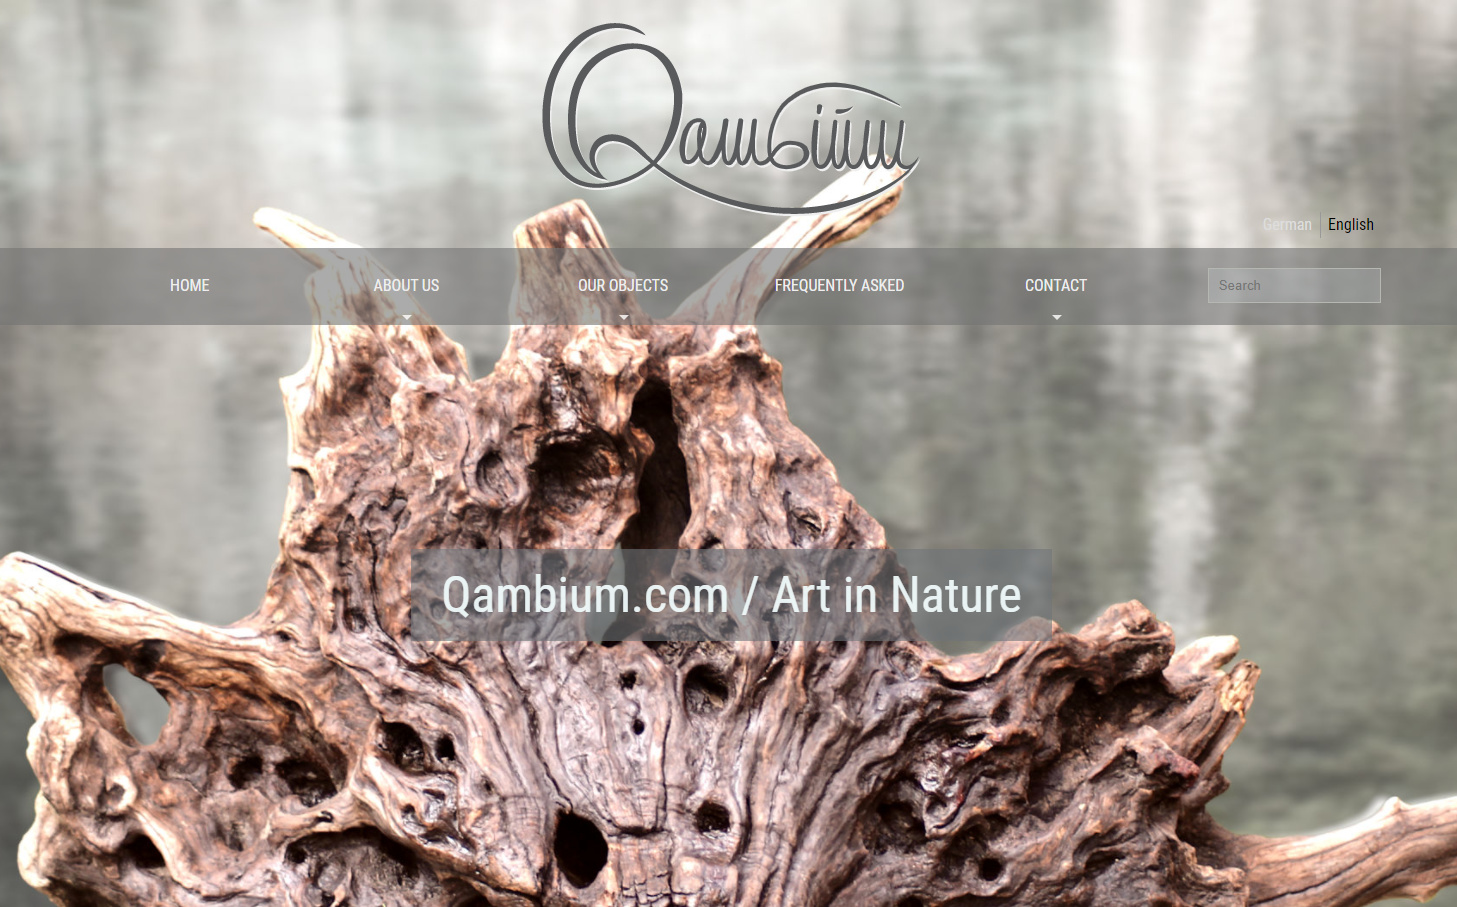 QAMBIUM Art in Nature